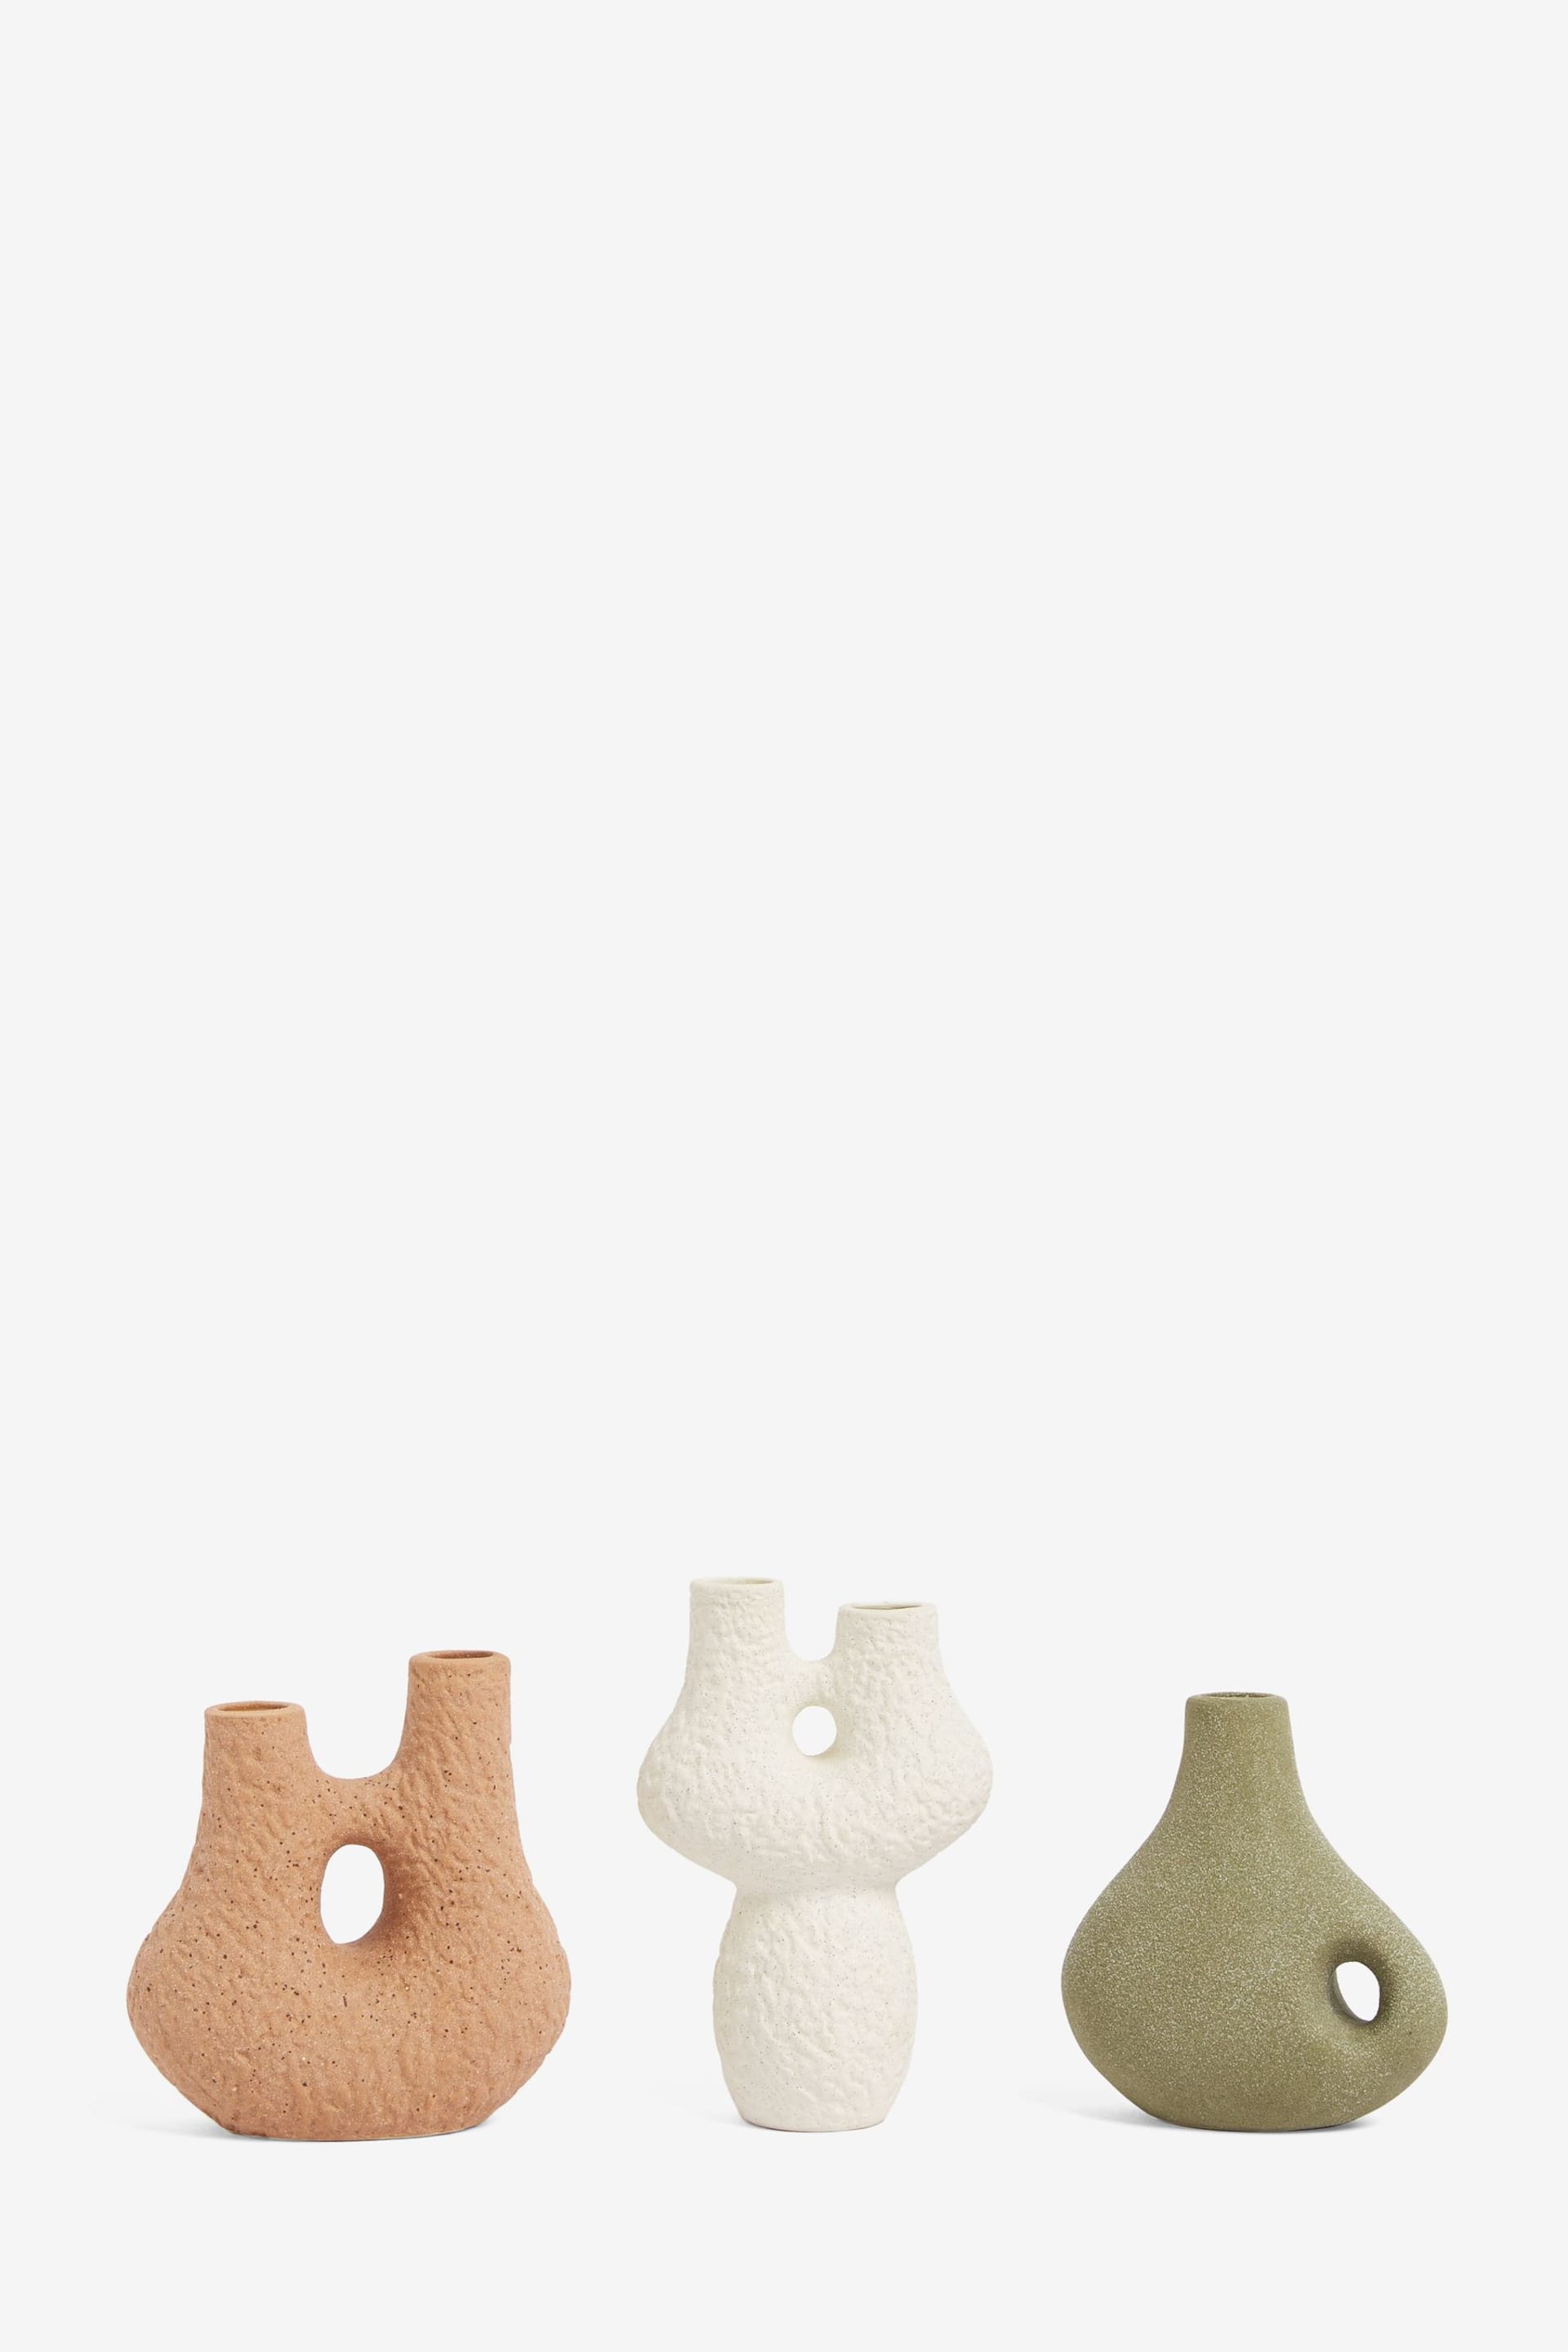 Set of 3 Natural Sculptural Scandi Ceramic Bud Vases - Image 4 of 4